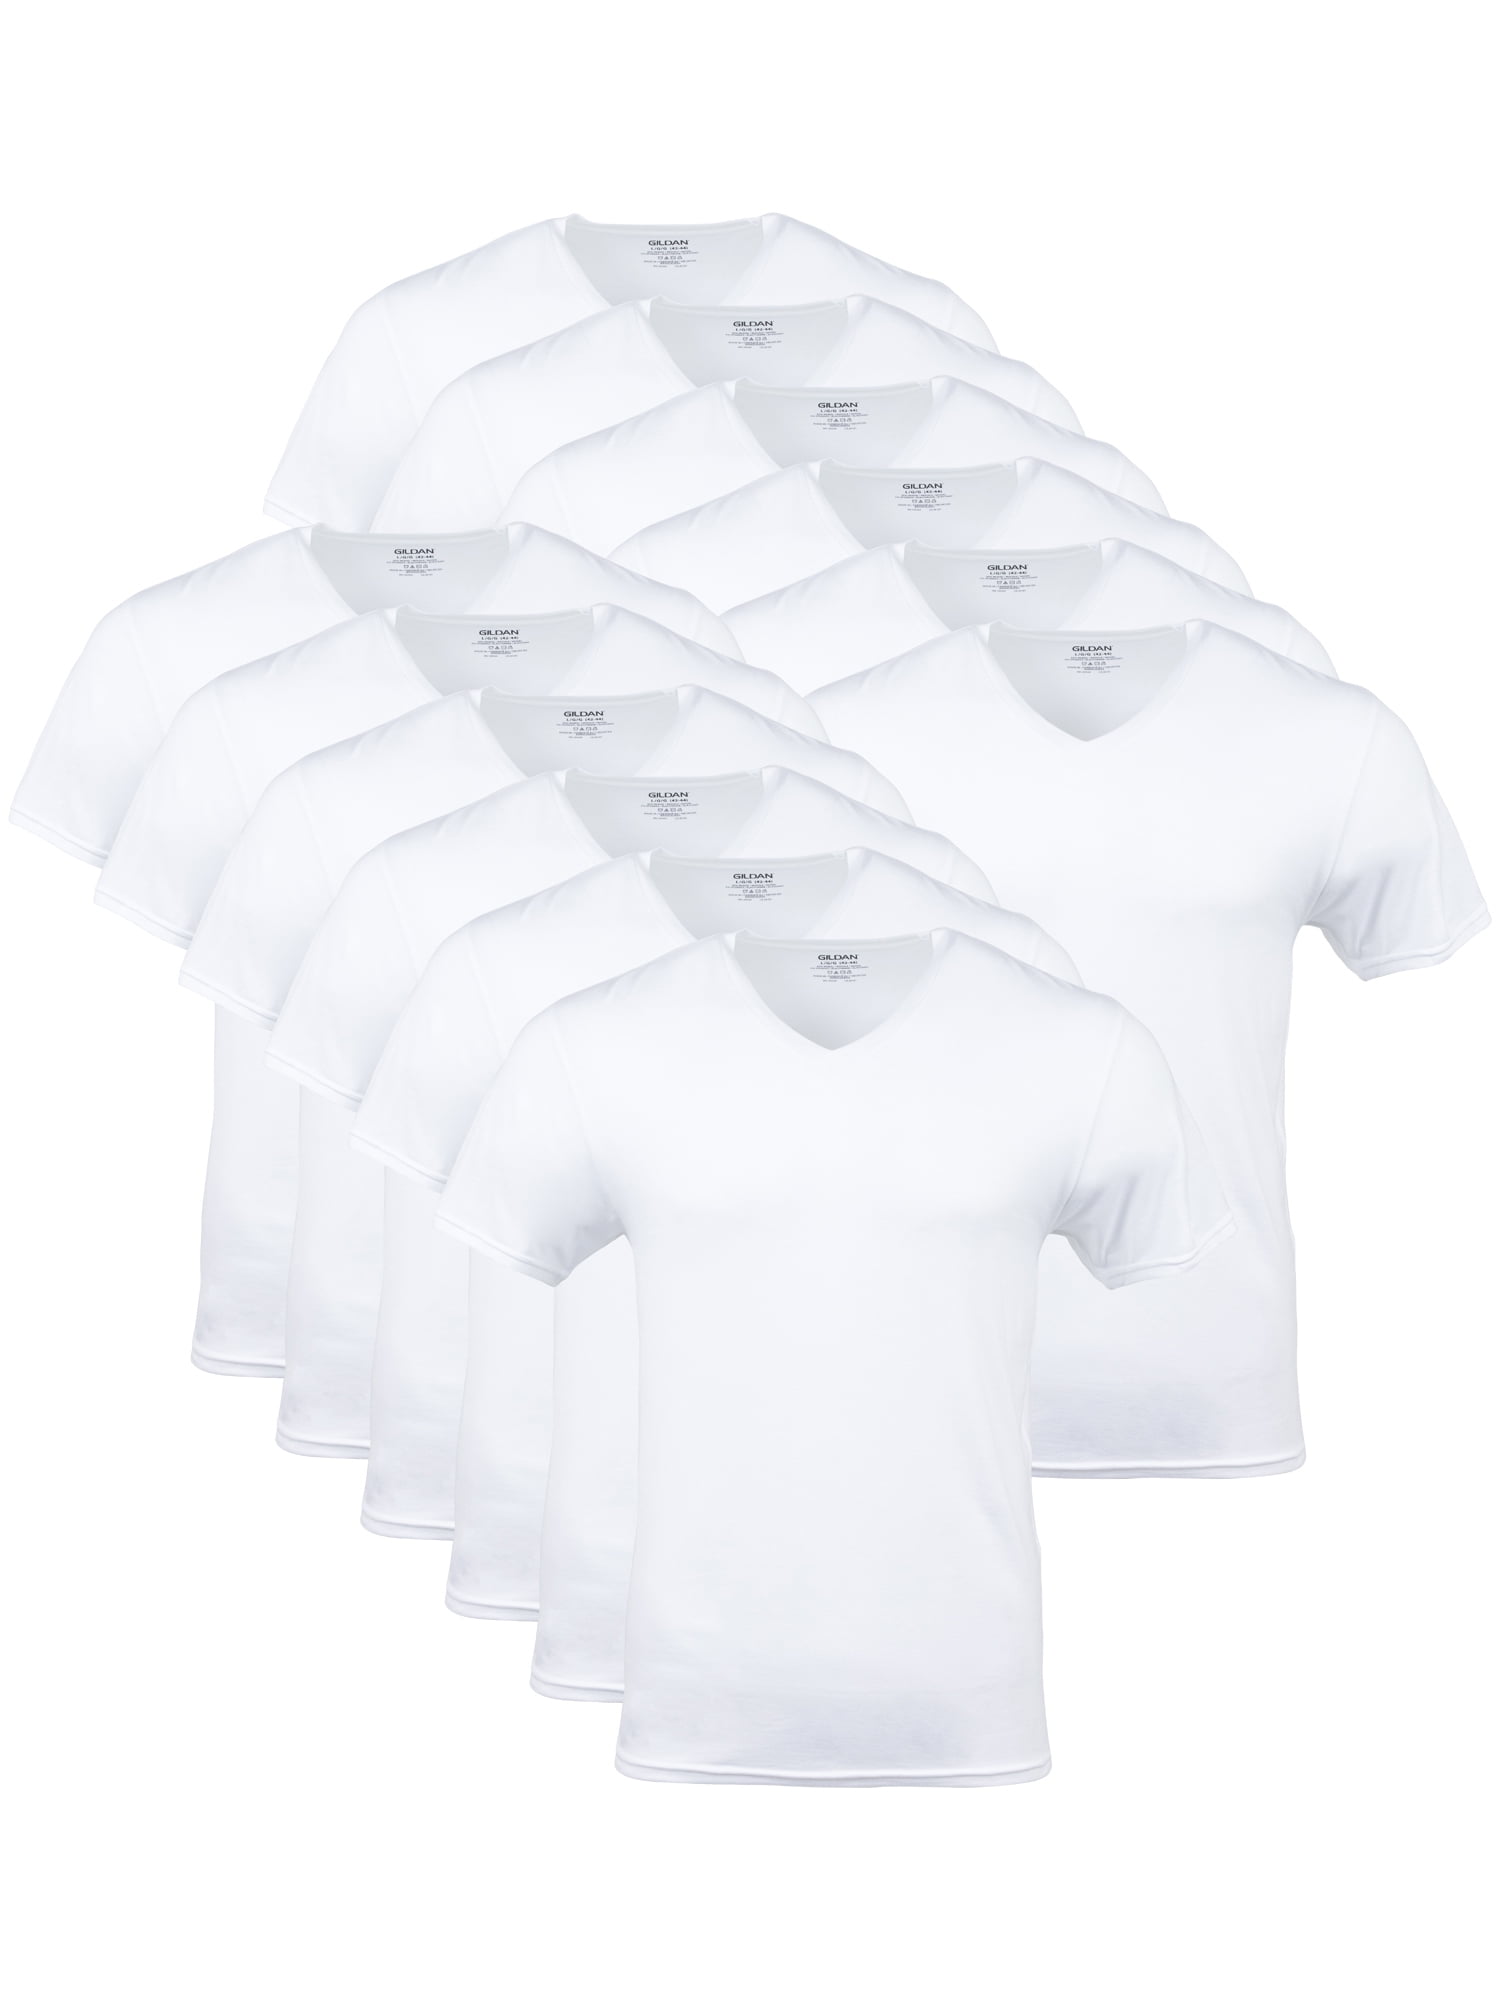 Gildan Adult Men's Short Sleeve V-Neck White T-Shirt, 12-Pack, Sizes S ...